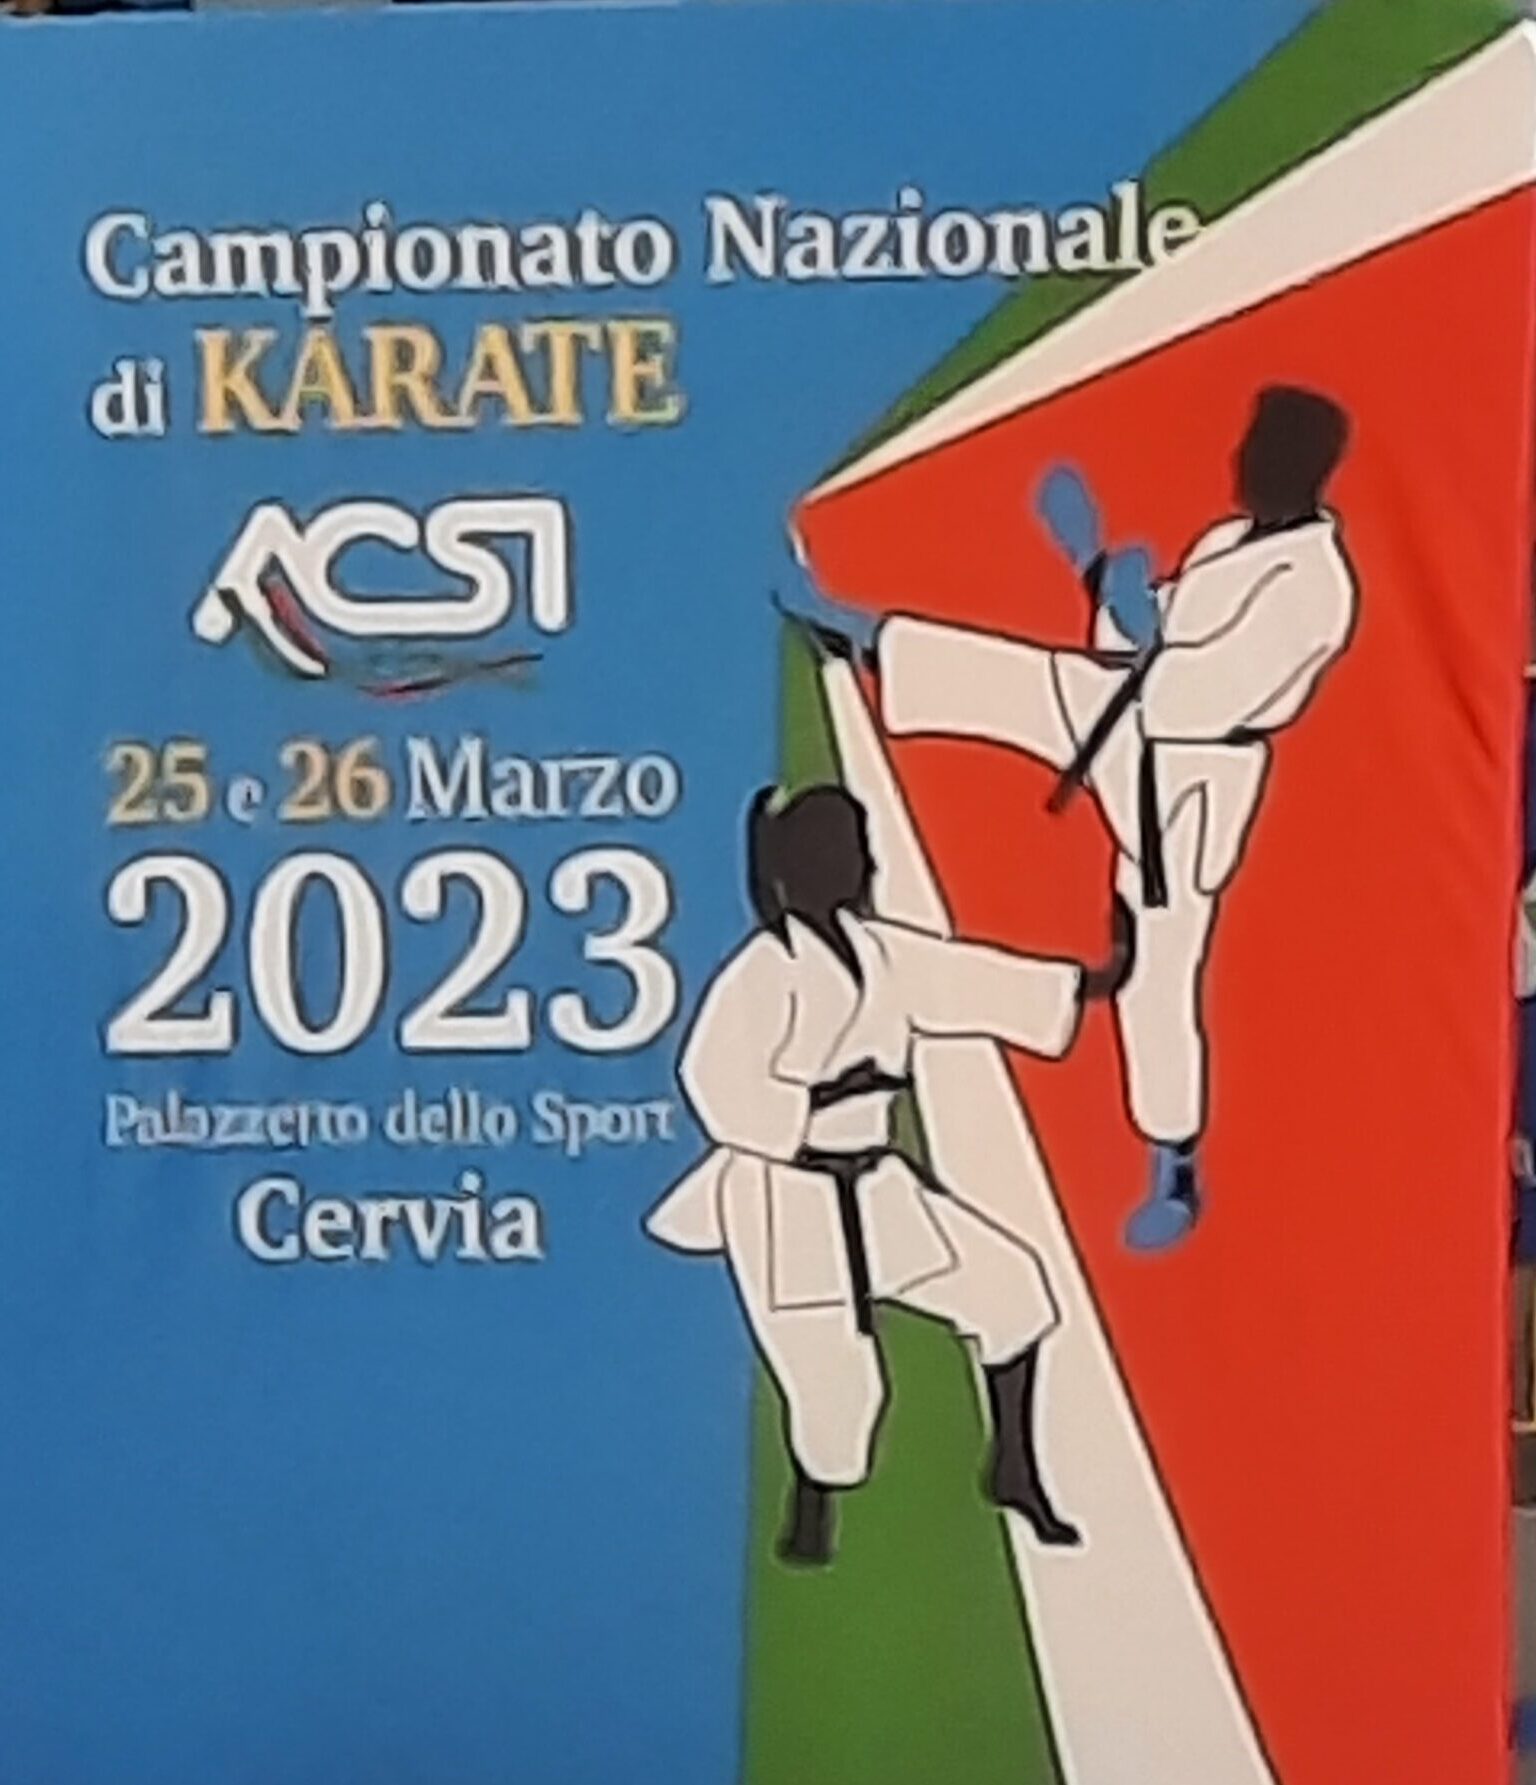 Scopri di più sull'articolo Campionato Nazionale di Karate ACSI